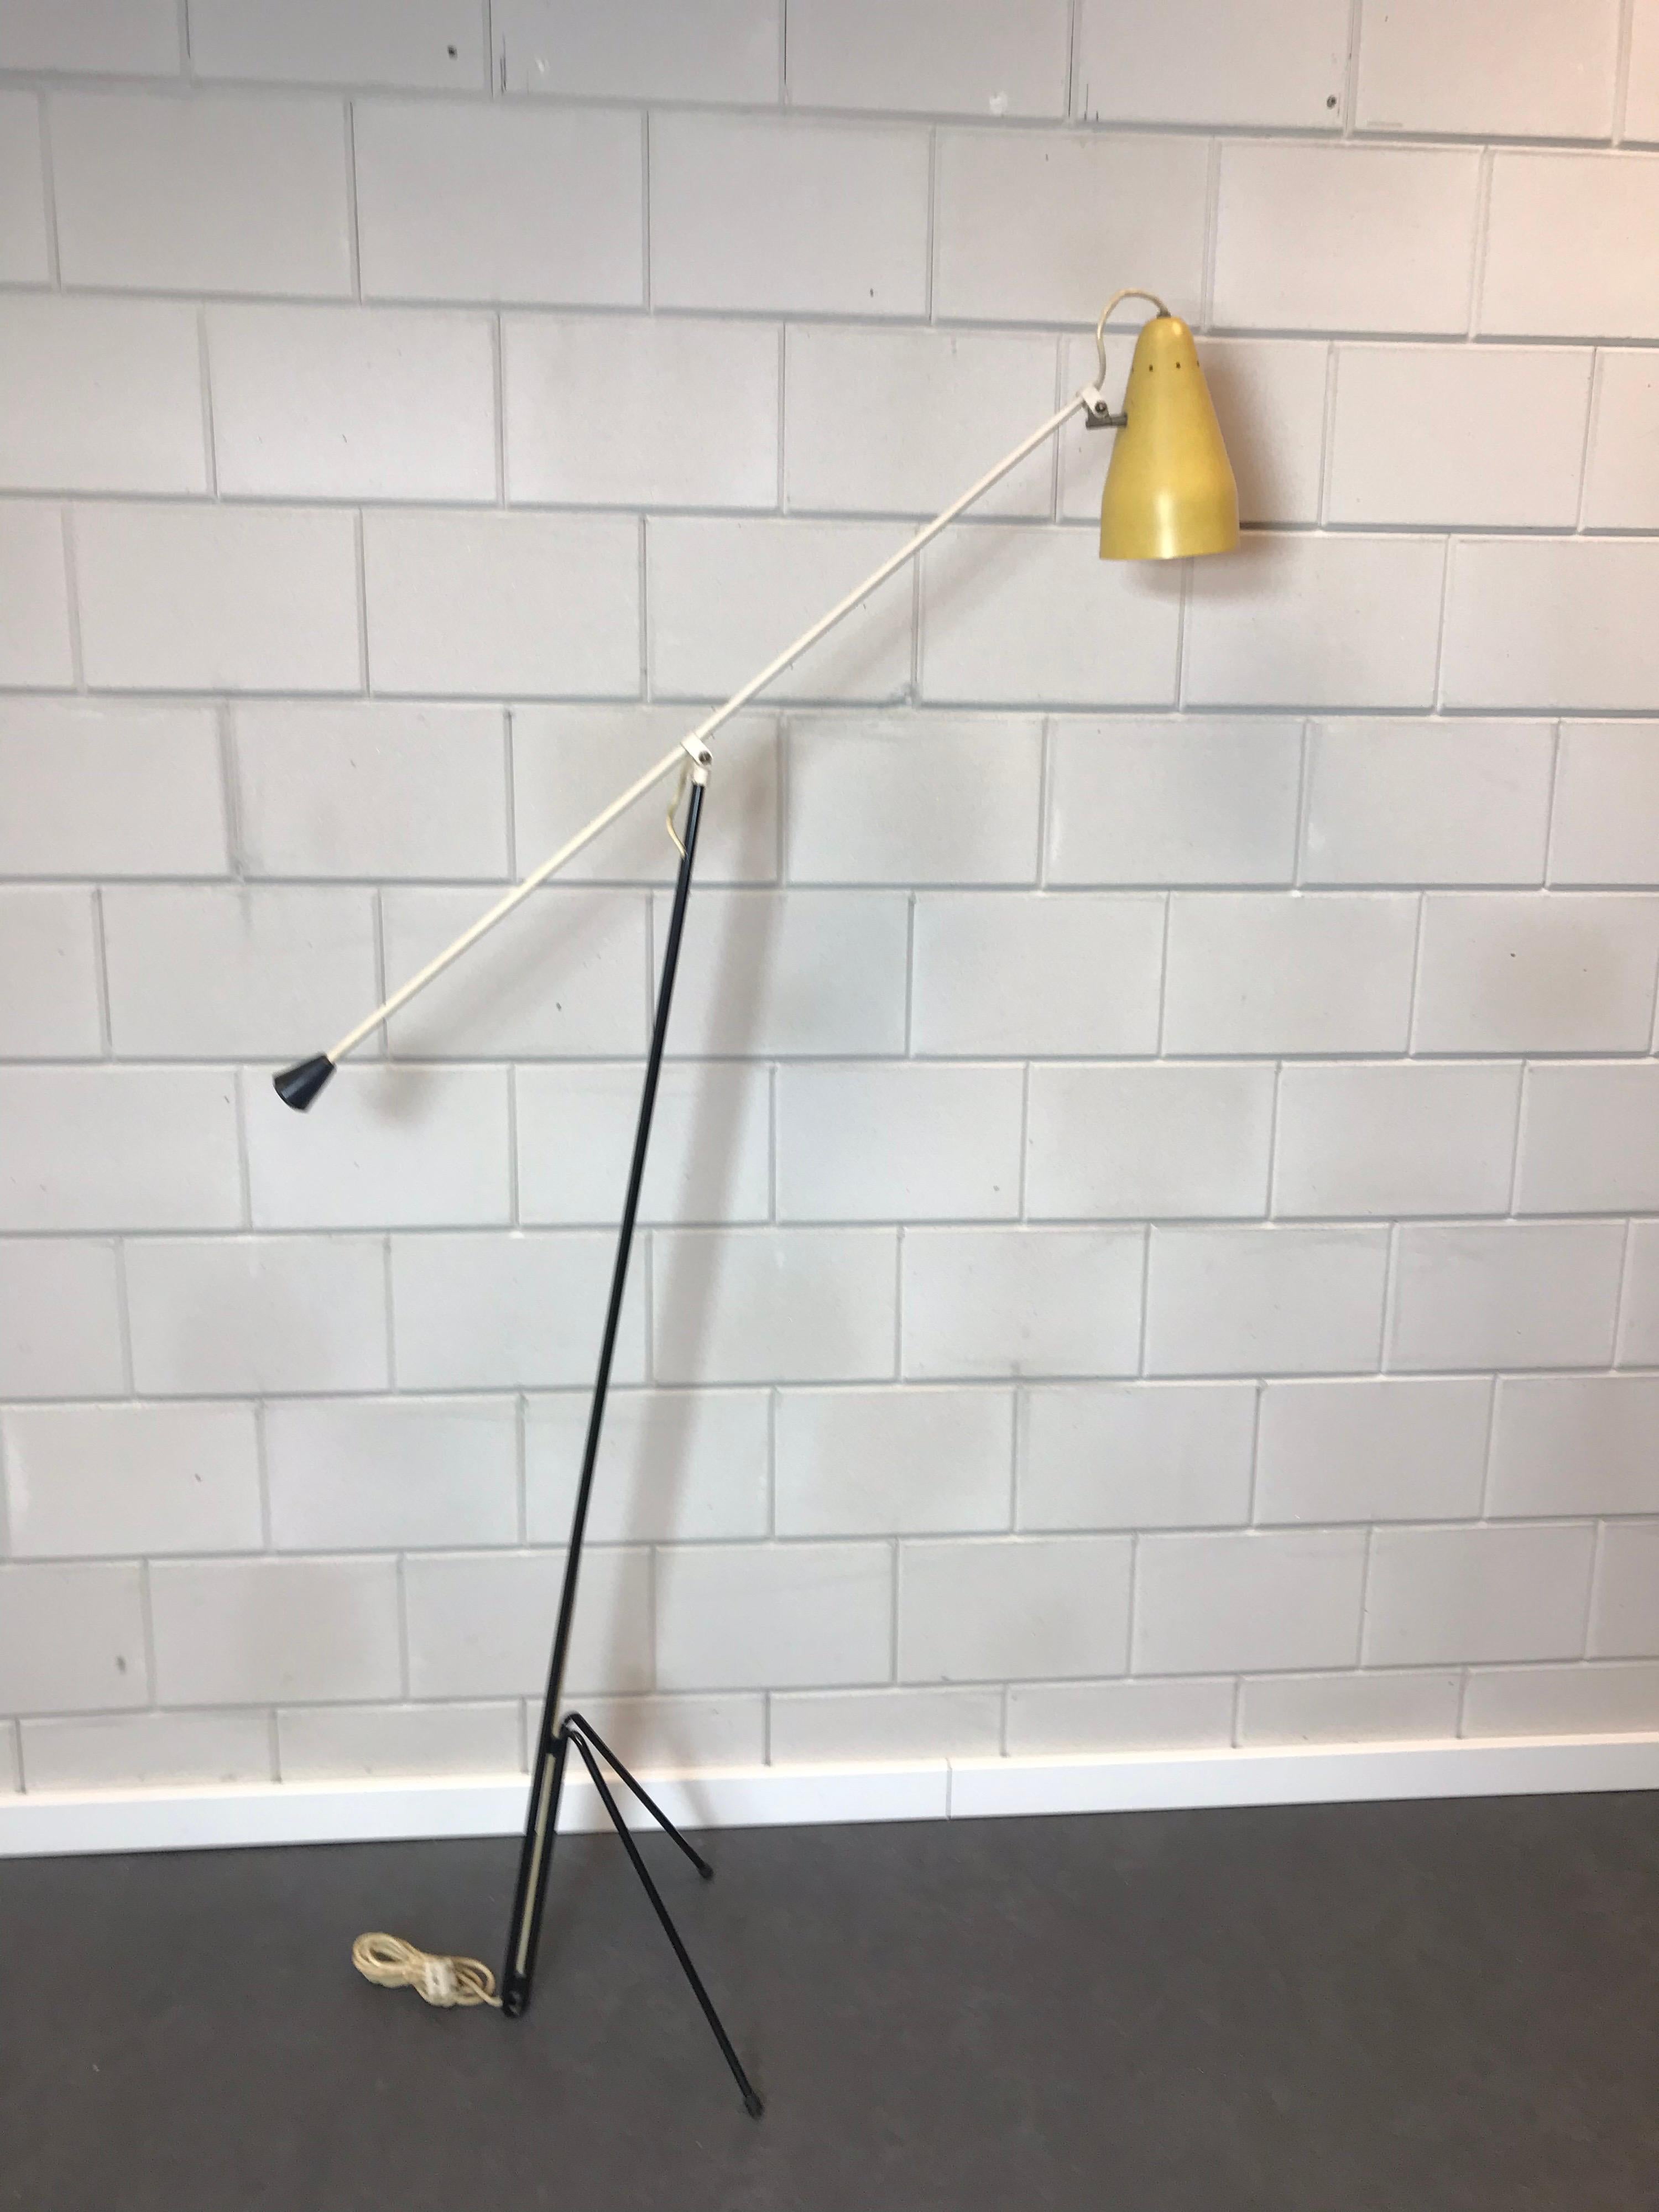 Rare lampadaire dit numéro 6320 conçu par Wim Rietveld pour la société néerlandaise Gispen.
Conçue en 1953, elle est toujours d'actualité.
Lampe sur pied tripode en métal noir avec bras réglable blanc et capot d'origine laqué jaune avec des trous